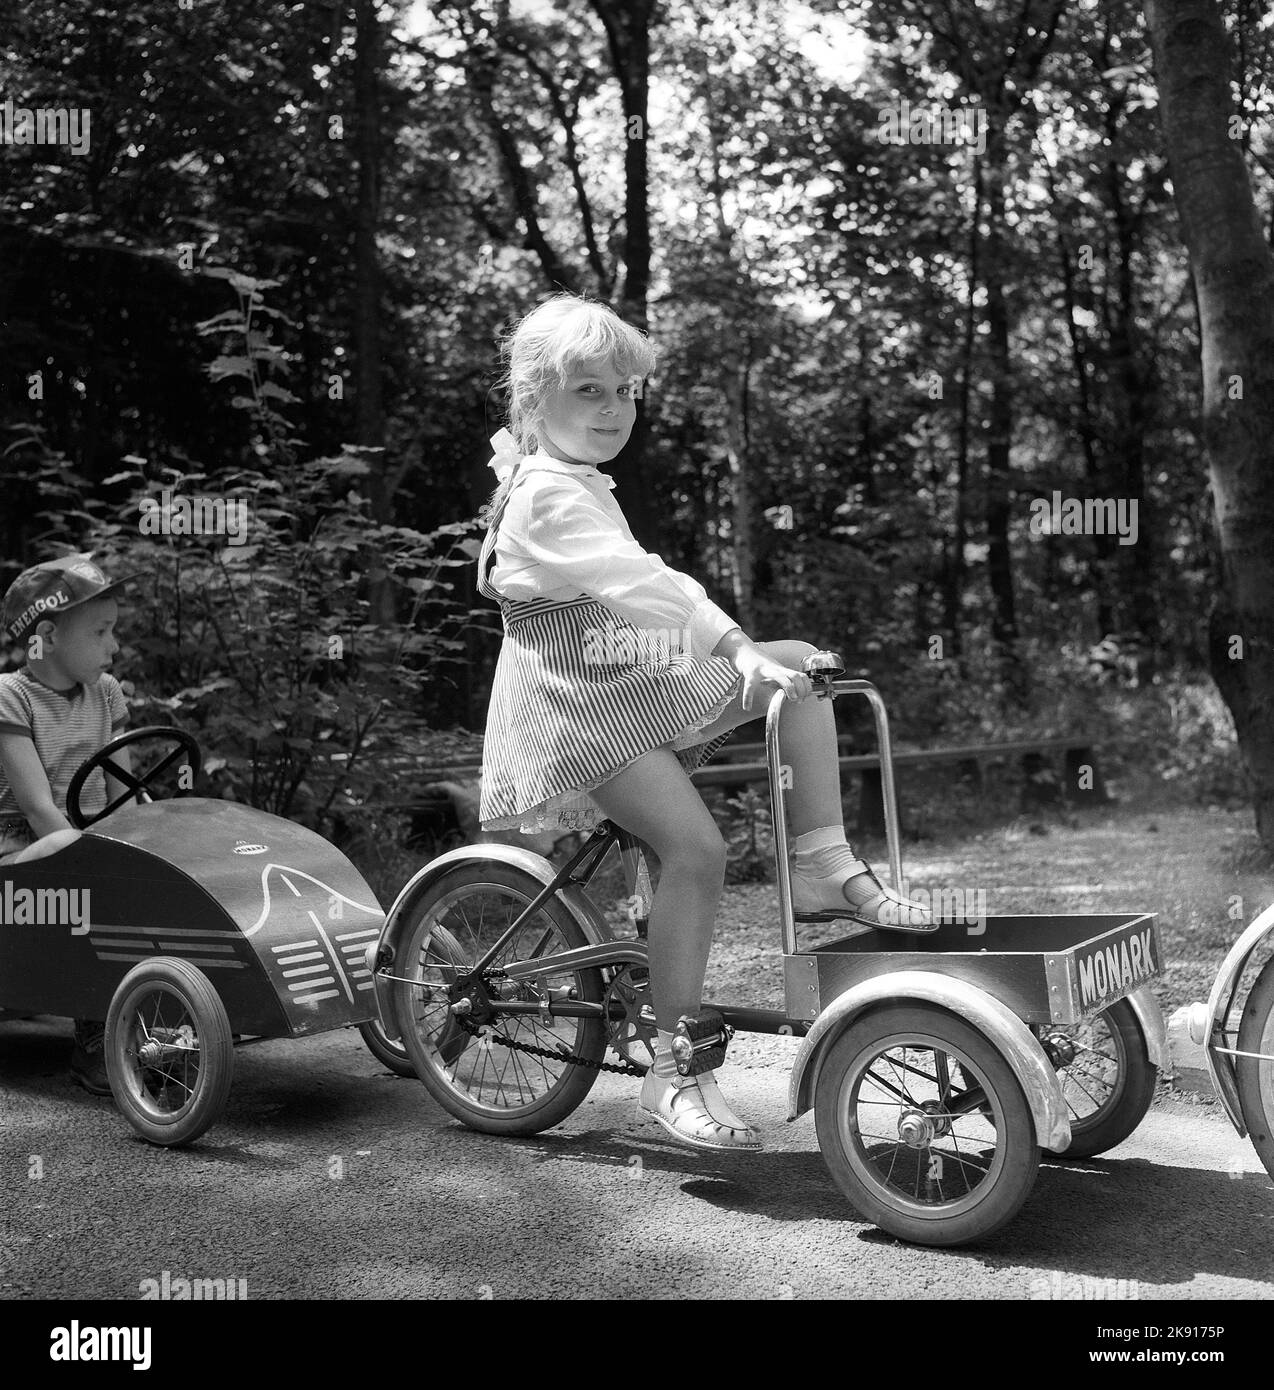 Dans le 1950s. Une fille sur un tricycle participe à une école de circulation des enfants où les enfants apprennent à se comporter dans la circulation. Les rues et les maisons sont plus petites que d'habitude dans l'exercice faire-croire-vrai dans le but de prévenir les accidents avec les enfants. L'année est 1958. Suède réf. CV79 Banque D'Images